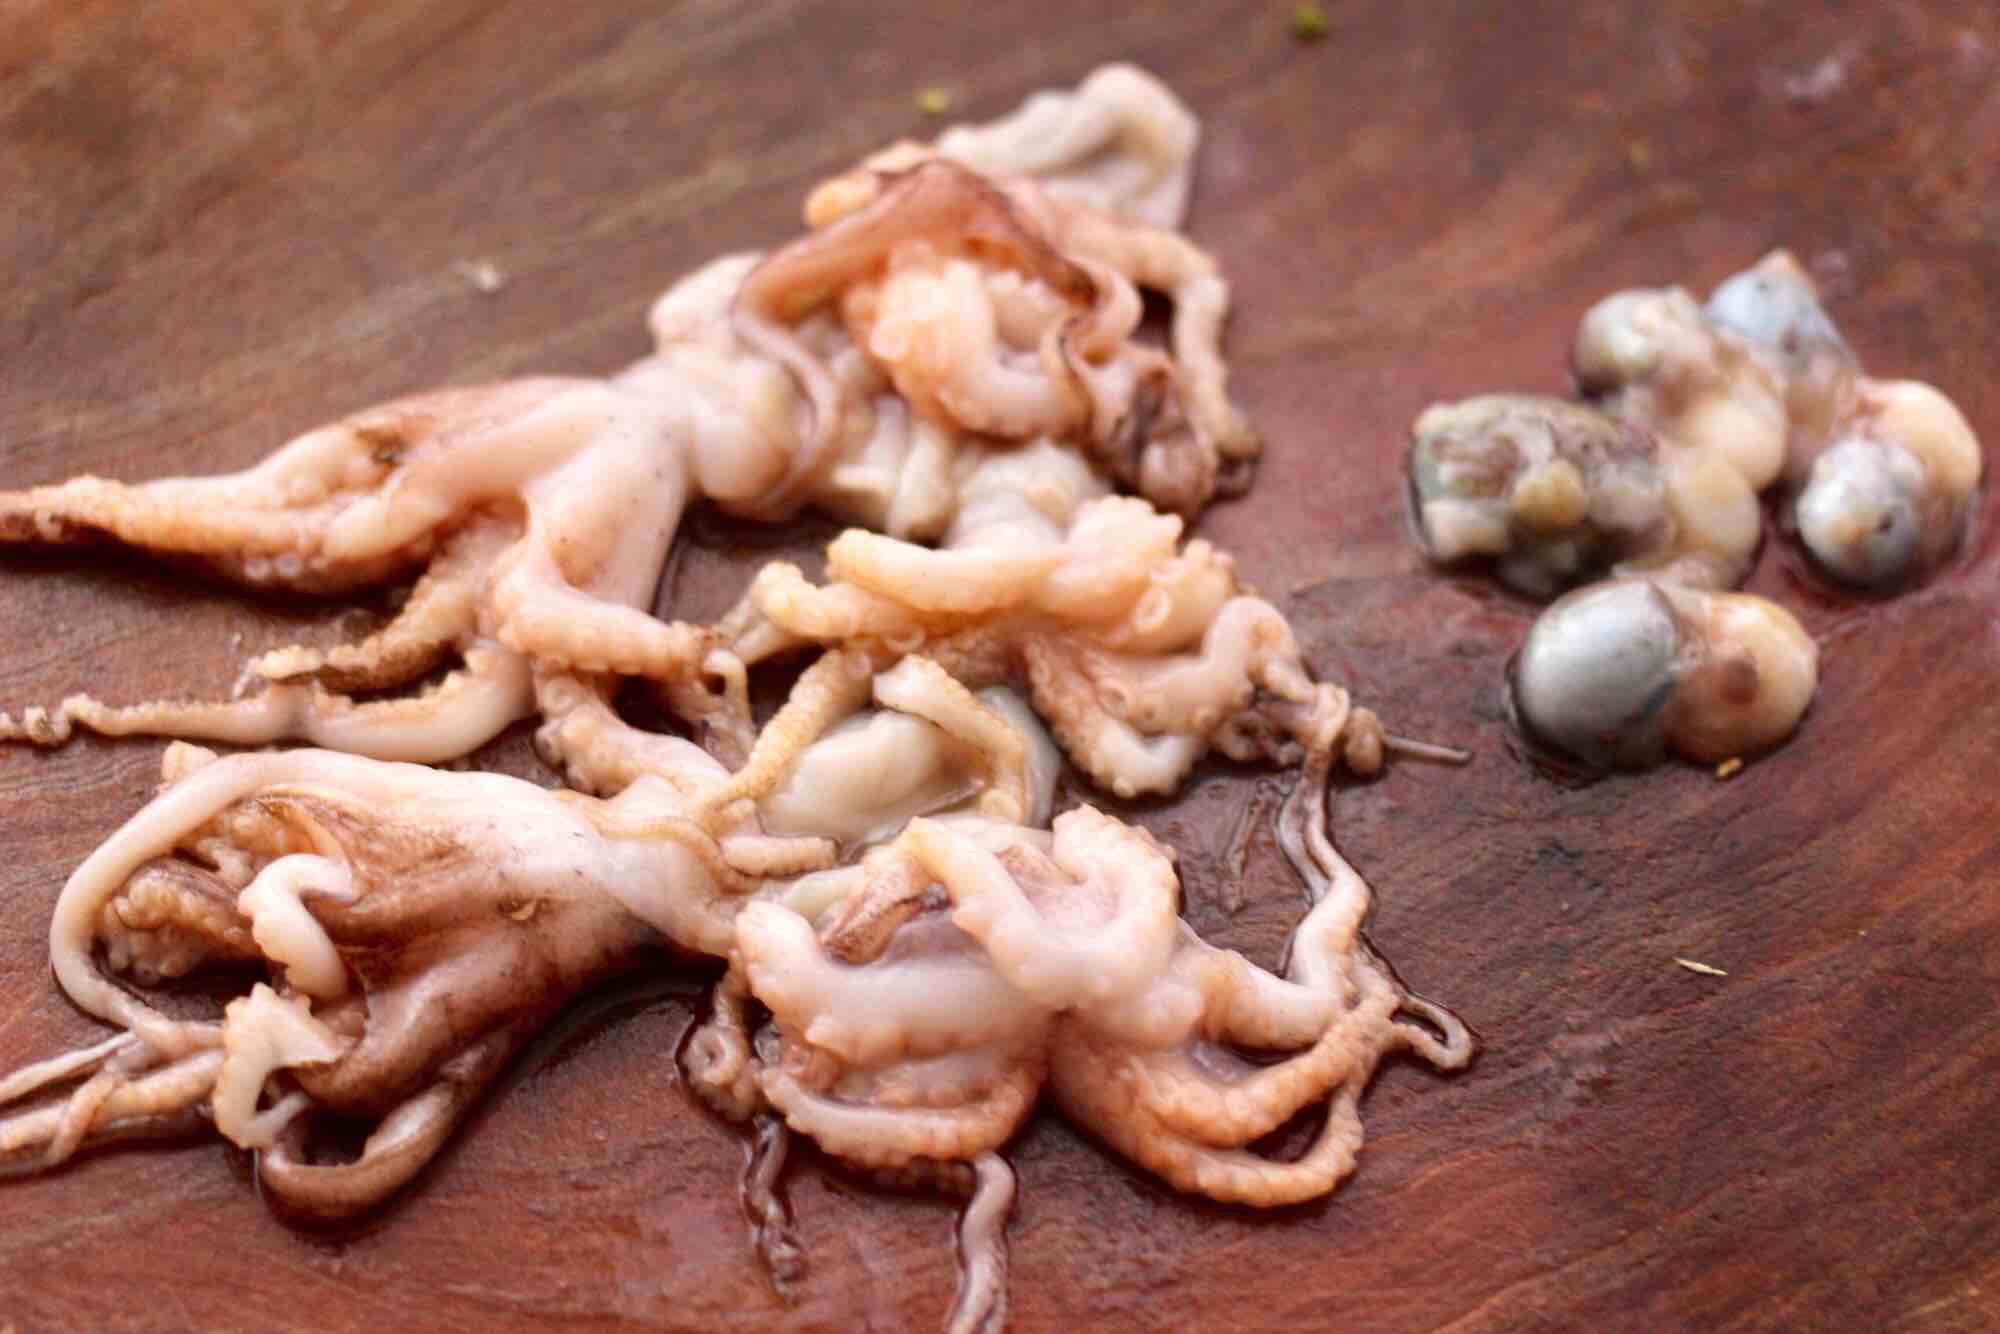 Cuttlefish Fragrant Dried Celery Stir-fry recipe